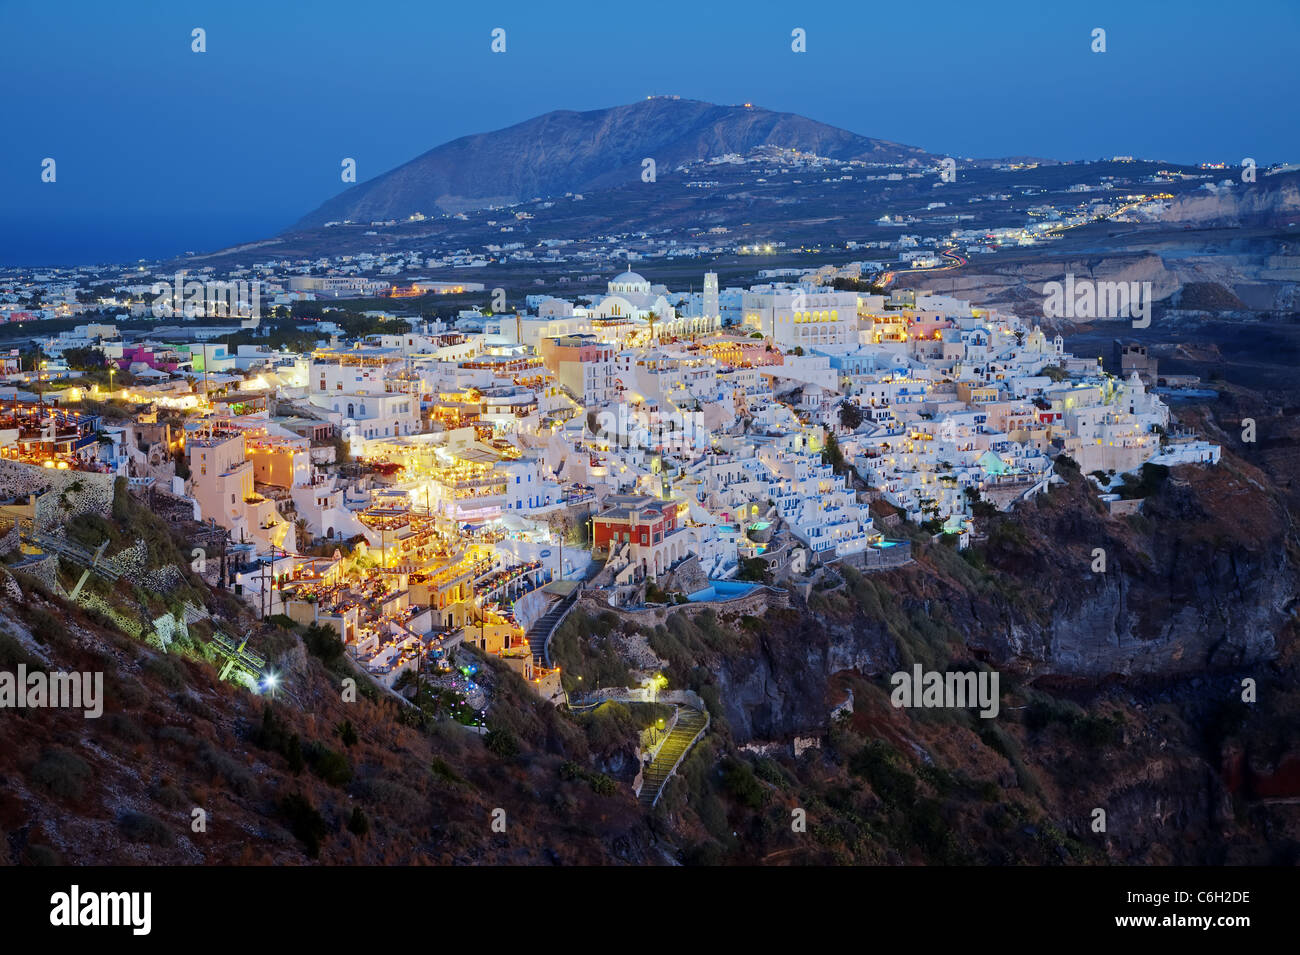 Vista in elevazione al di sopra del paesaggio vulcanico e la cittadina principale di Fira, Santorini (Thira), Isole Cicladi, il Mare Egeo, in Grecia, in Europa Foto Stock